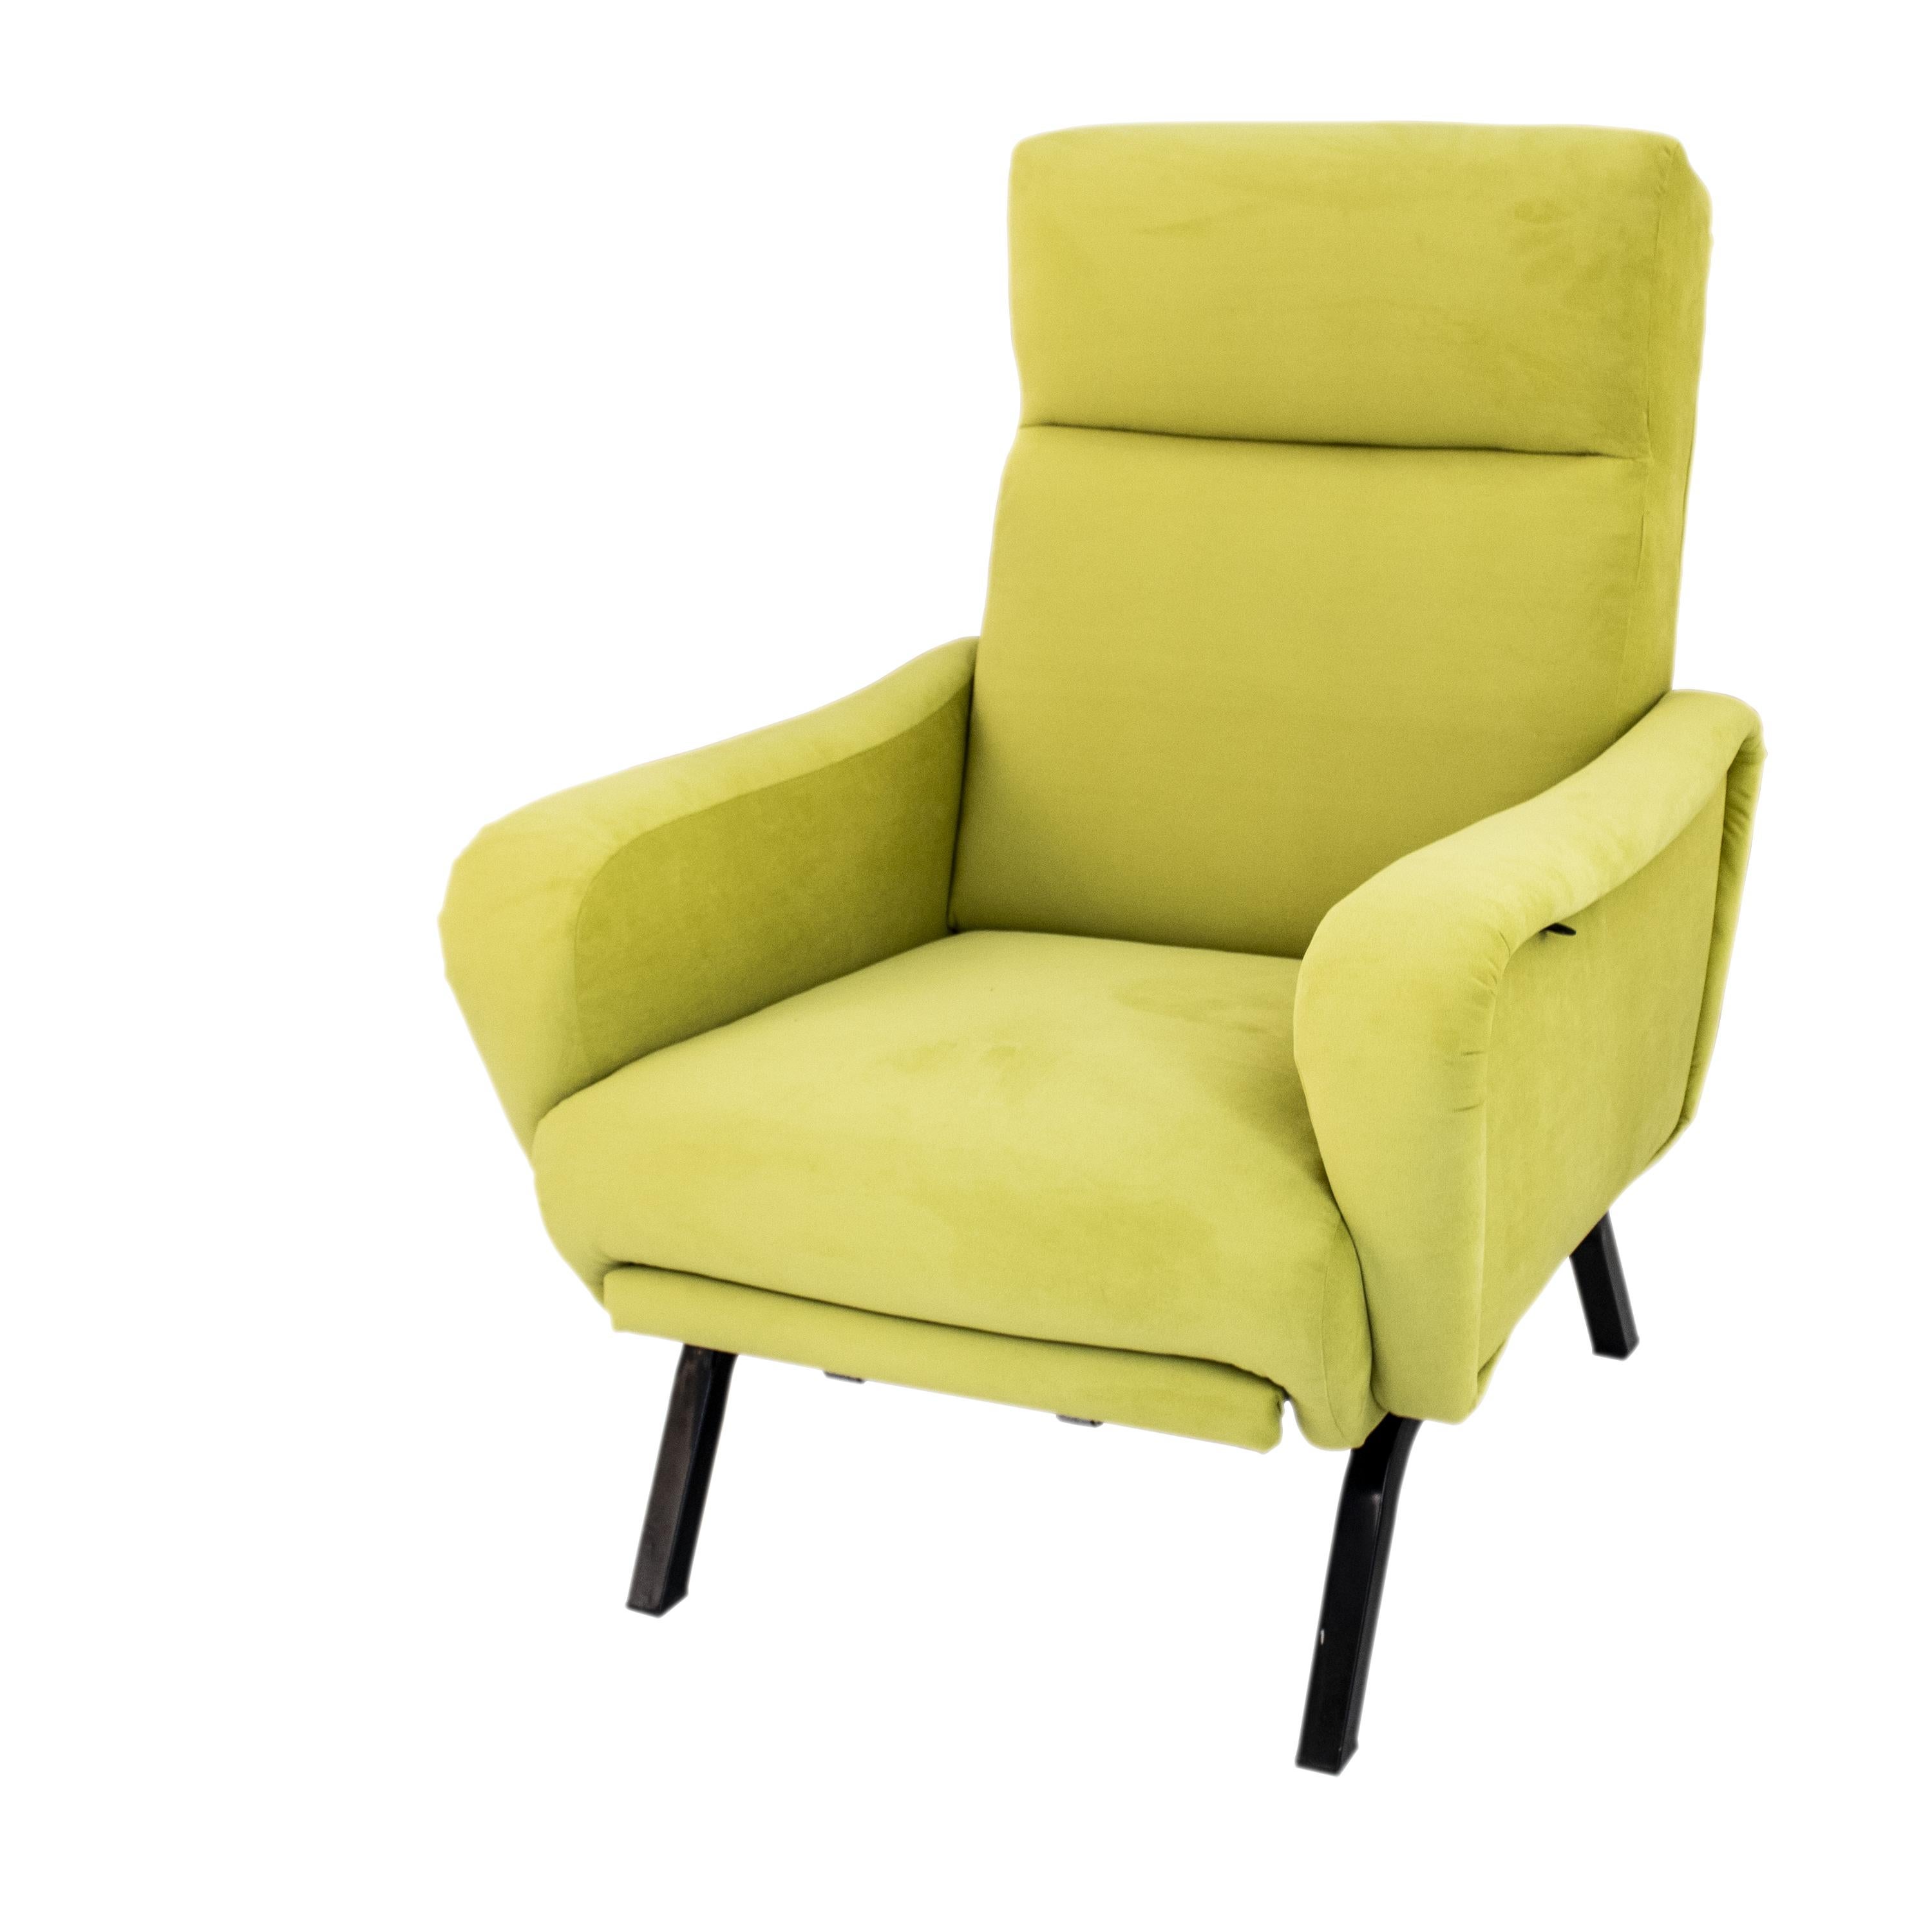 Dieser italienische, verstellbare Sessel besteht aus einer soliden Metall- und Holzstruktur, ist mit Schaumstoff überzogen und mit einem hellgrünen Samtstoff gepolstert. 
Es handelt sich um ein bequemes und vielseitiges Design, das es ermöglicht,